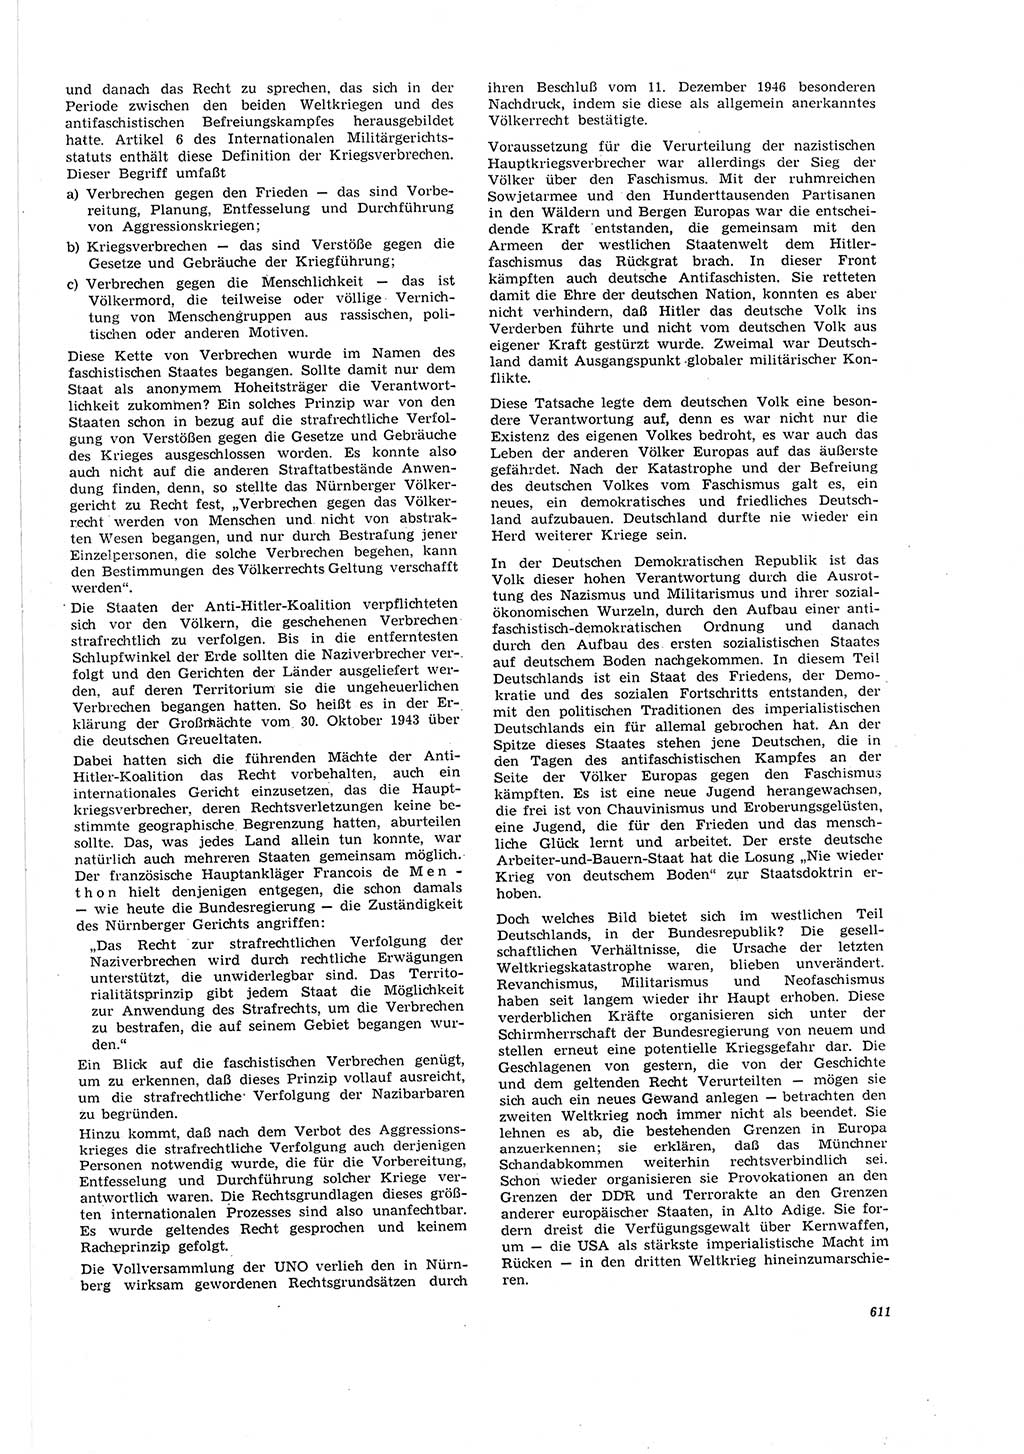 Neue Justiz (NJ), Zeitschrift für Recht und Rechtswissenschaft [Deutsche Demokratische Republik (DDR)], 20. Jahrgang 1966, Seite 611 (NJ DDR 1966, S. 611)